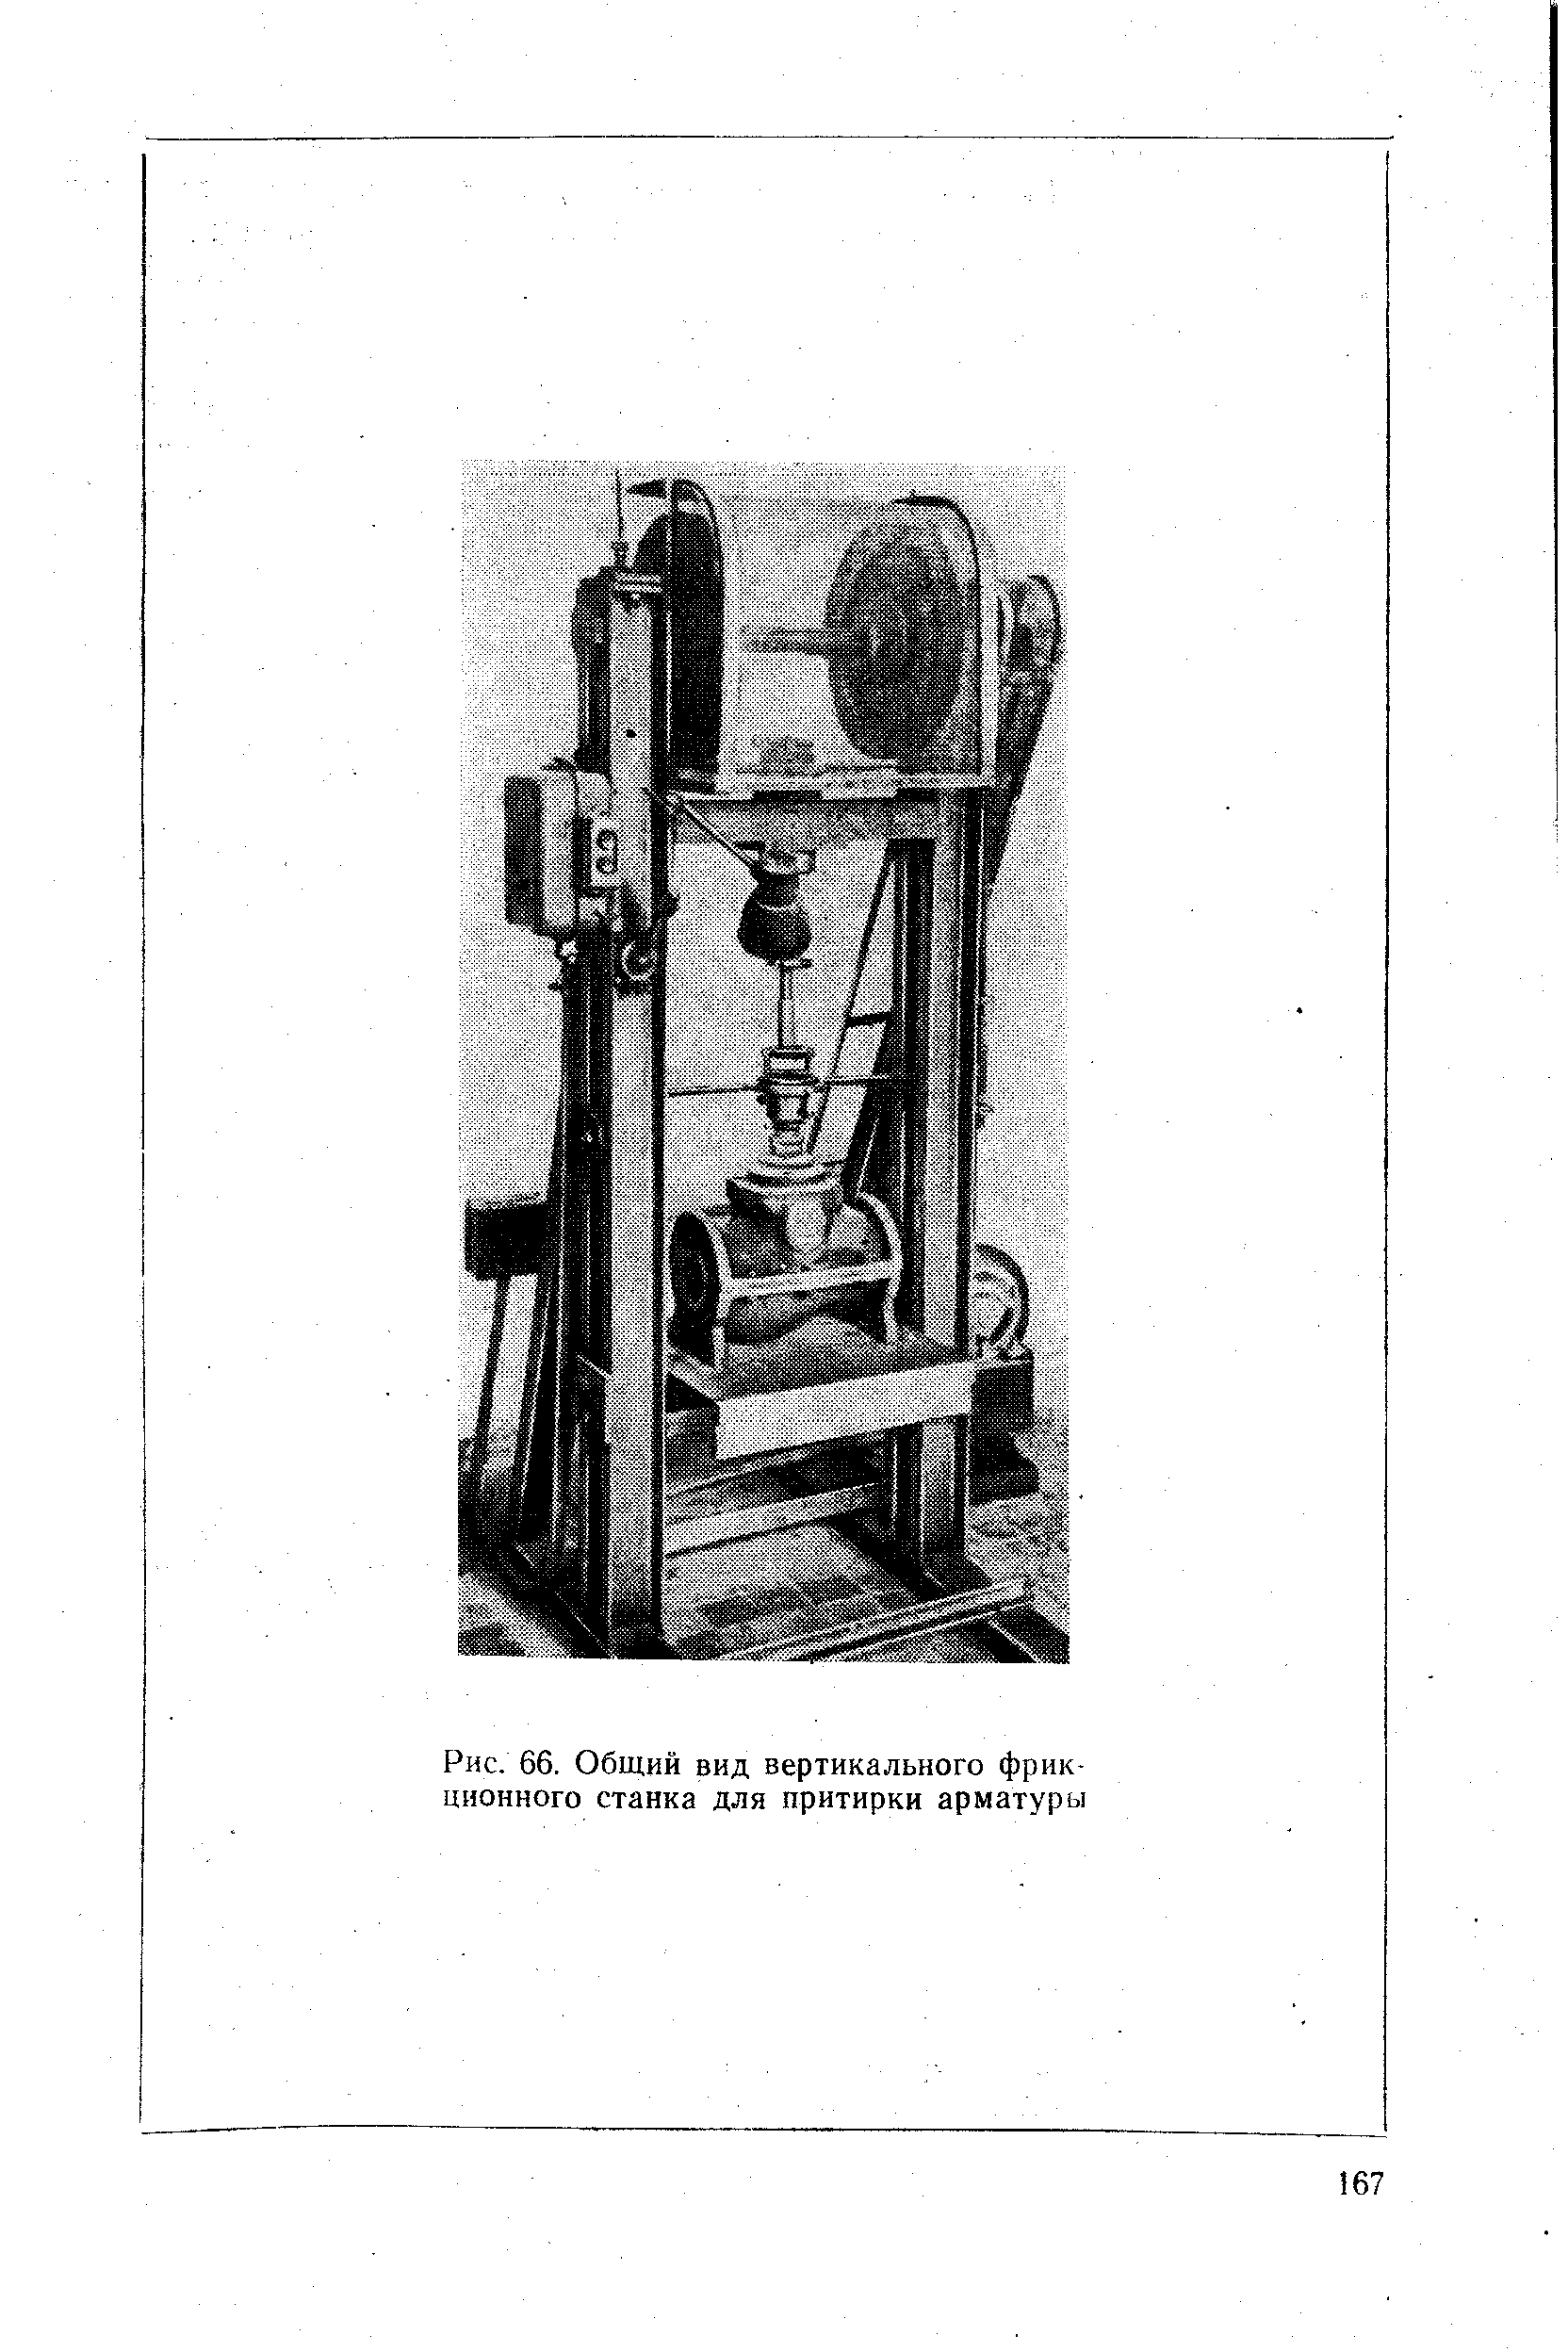 Рис. 66. Общий вид вертикального фрикционного станка для притирки арматуры
